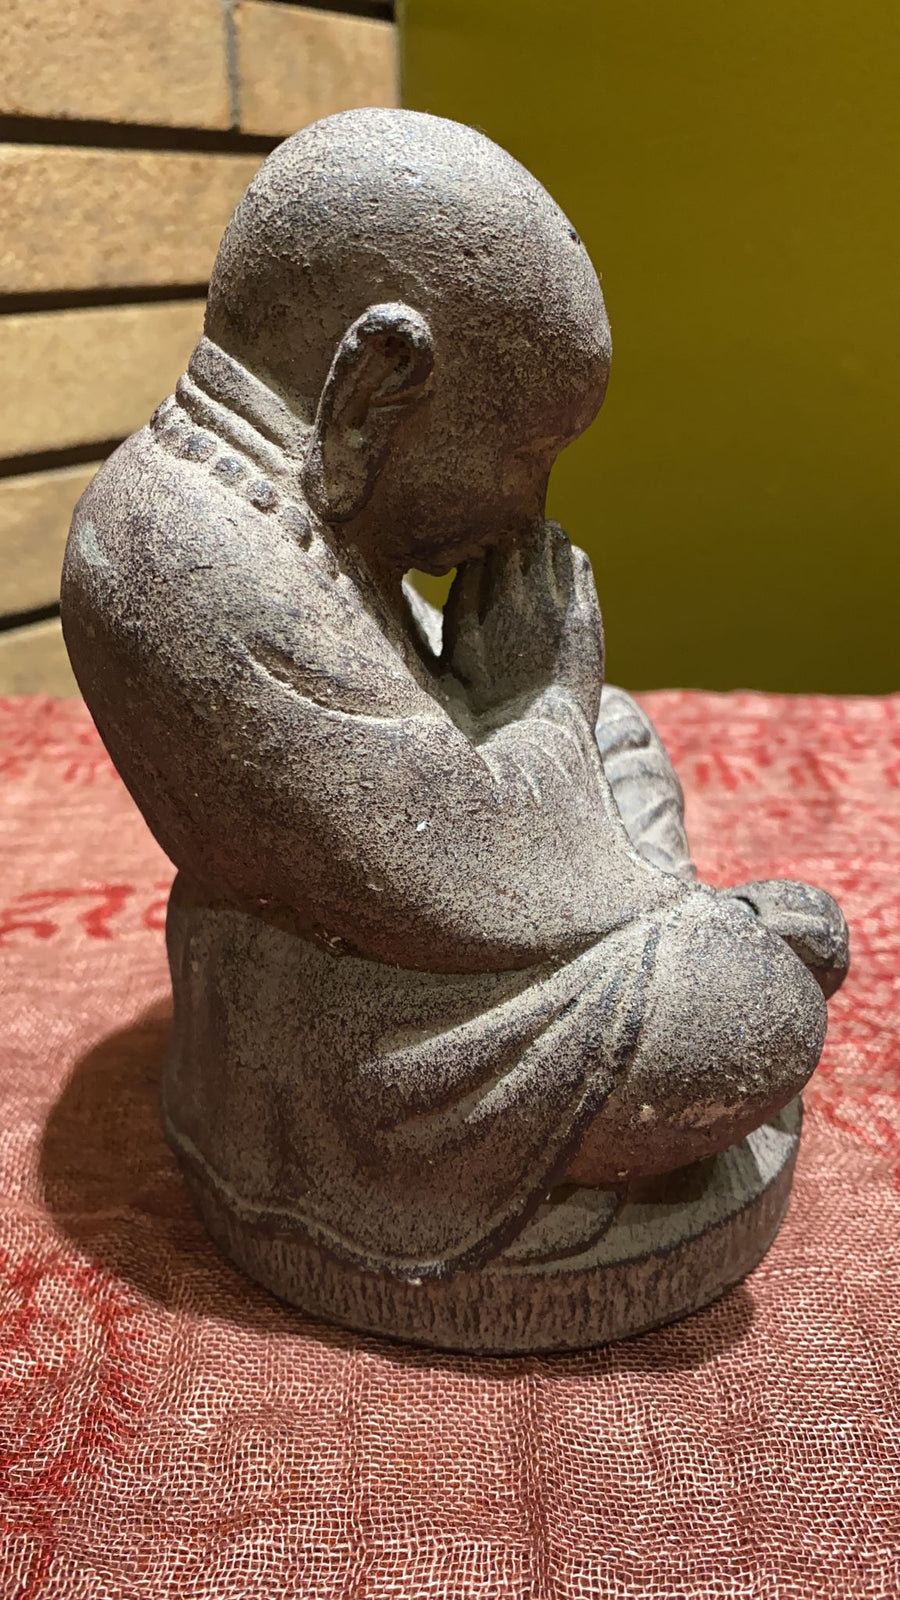 Praying Monk Statue